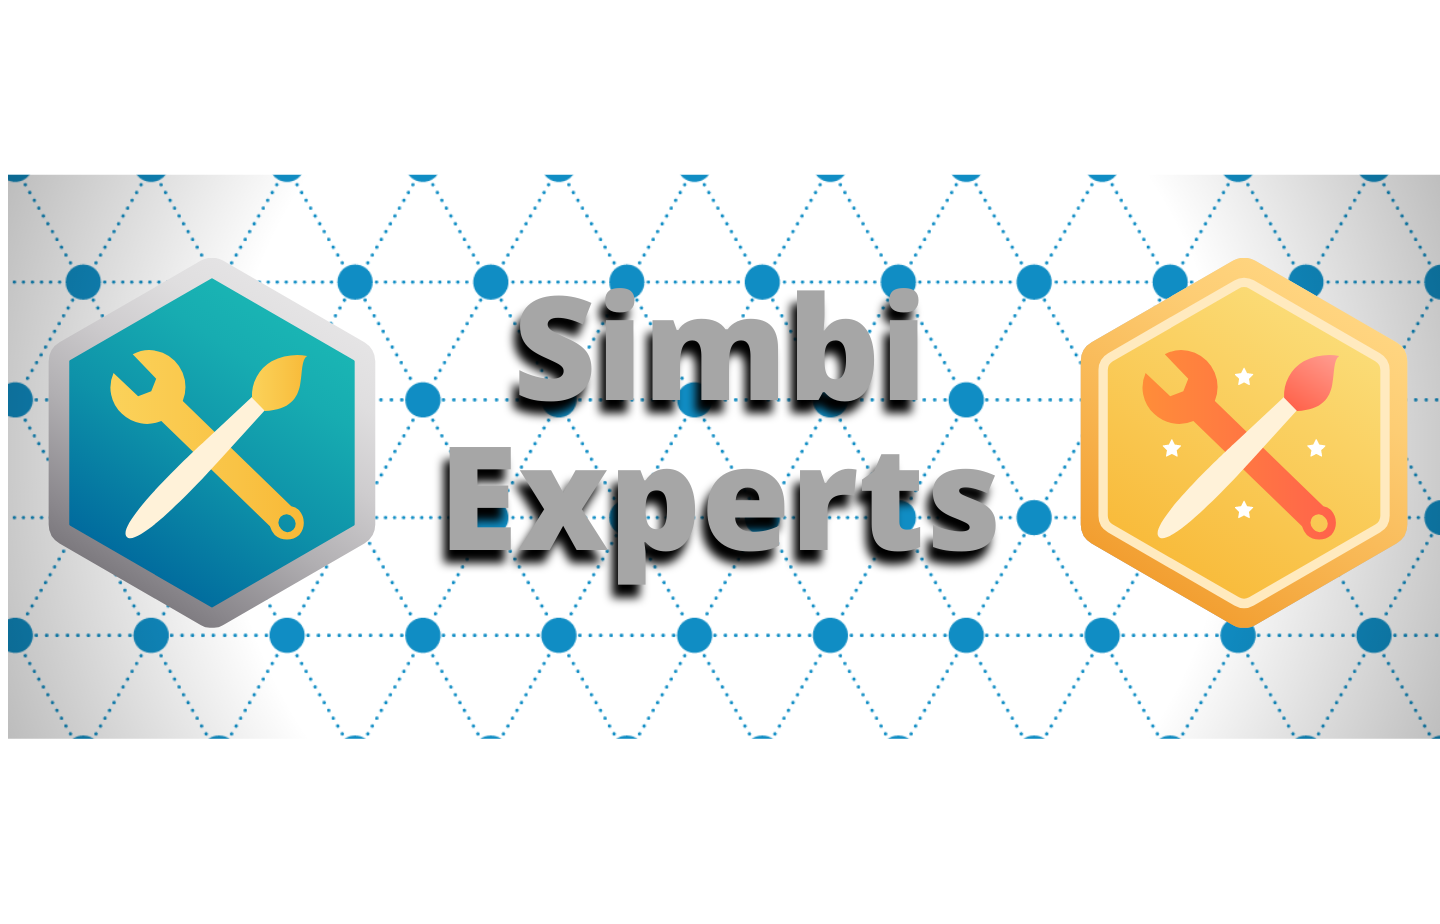 Introducing Simbi Experts!